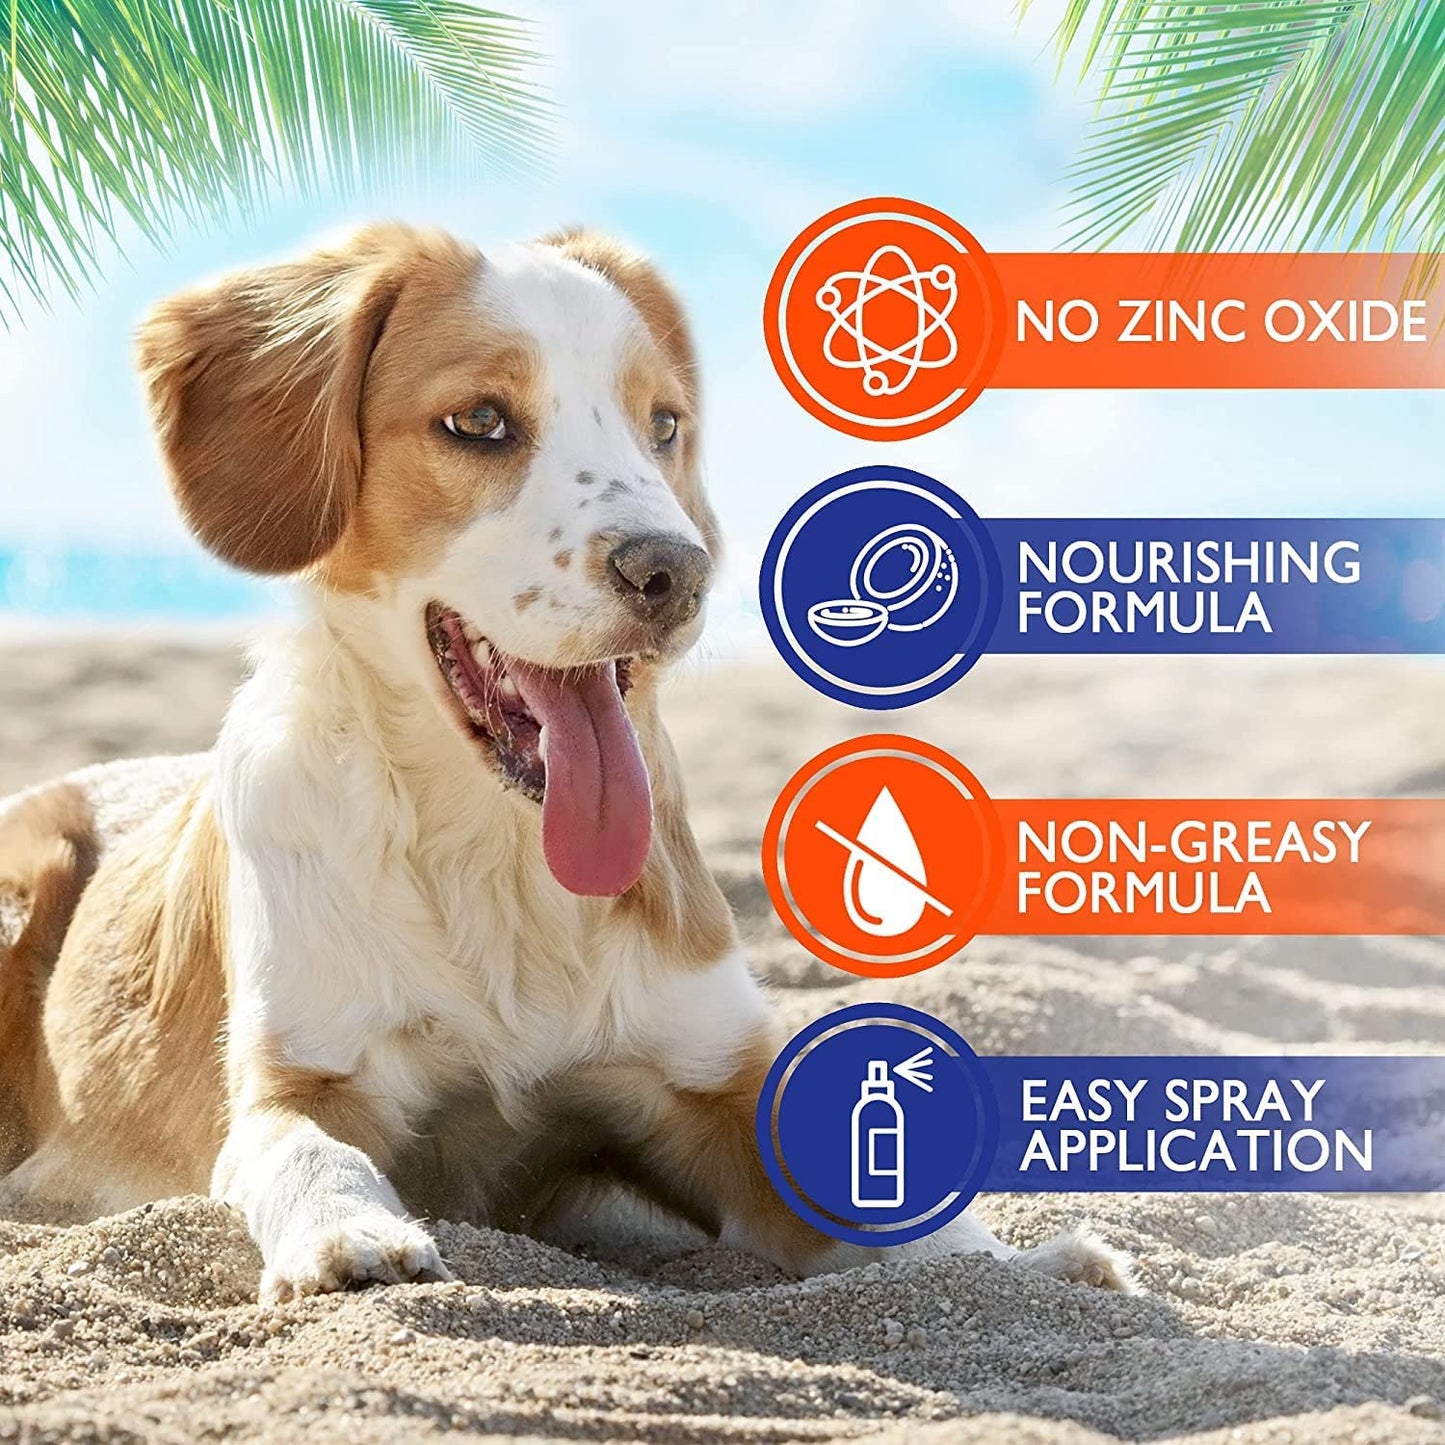 Dog Sunscreen Spray - Safe for All Breeds, 8 oz